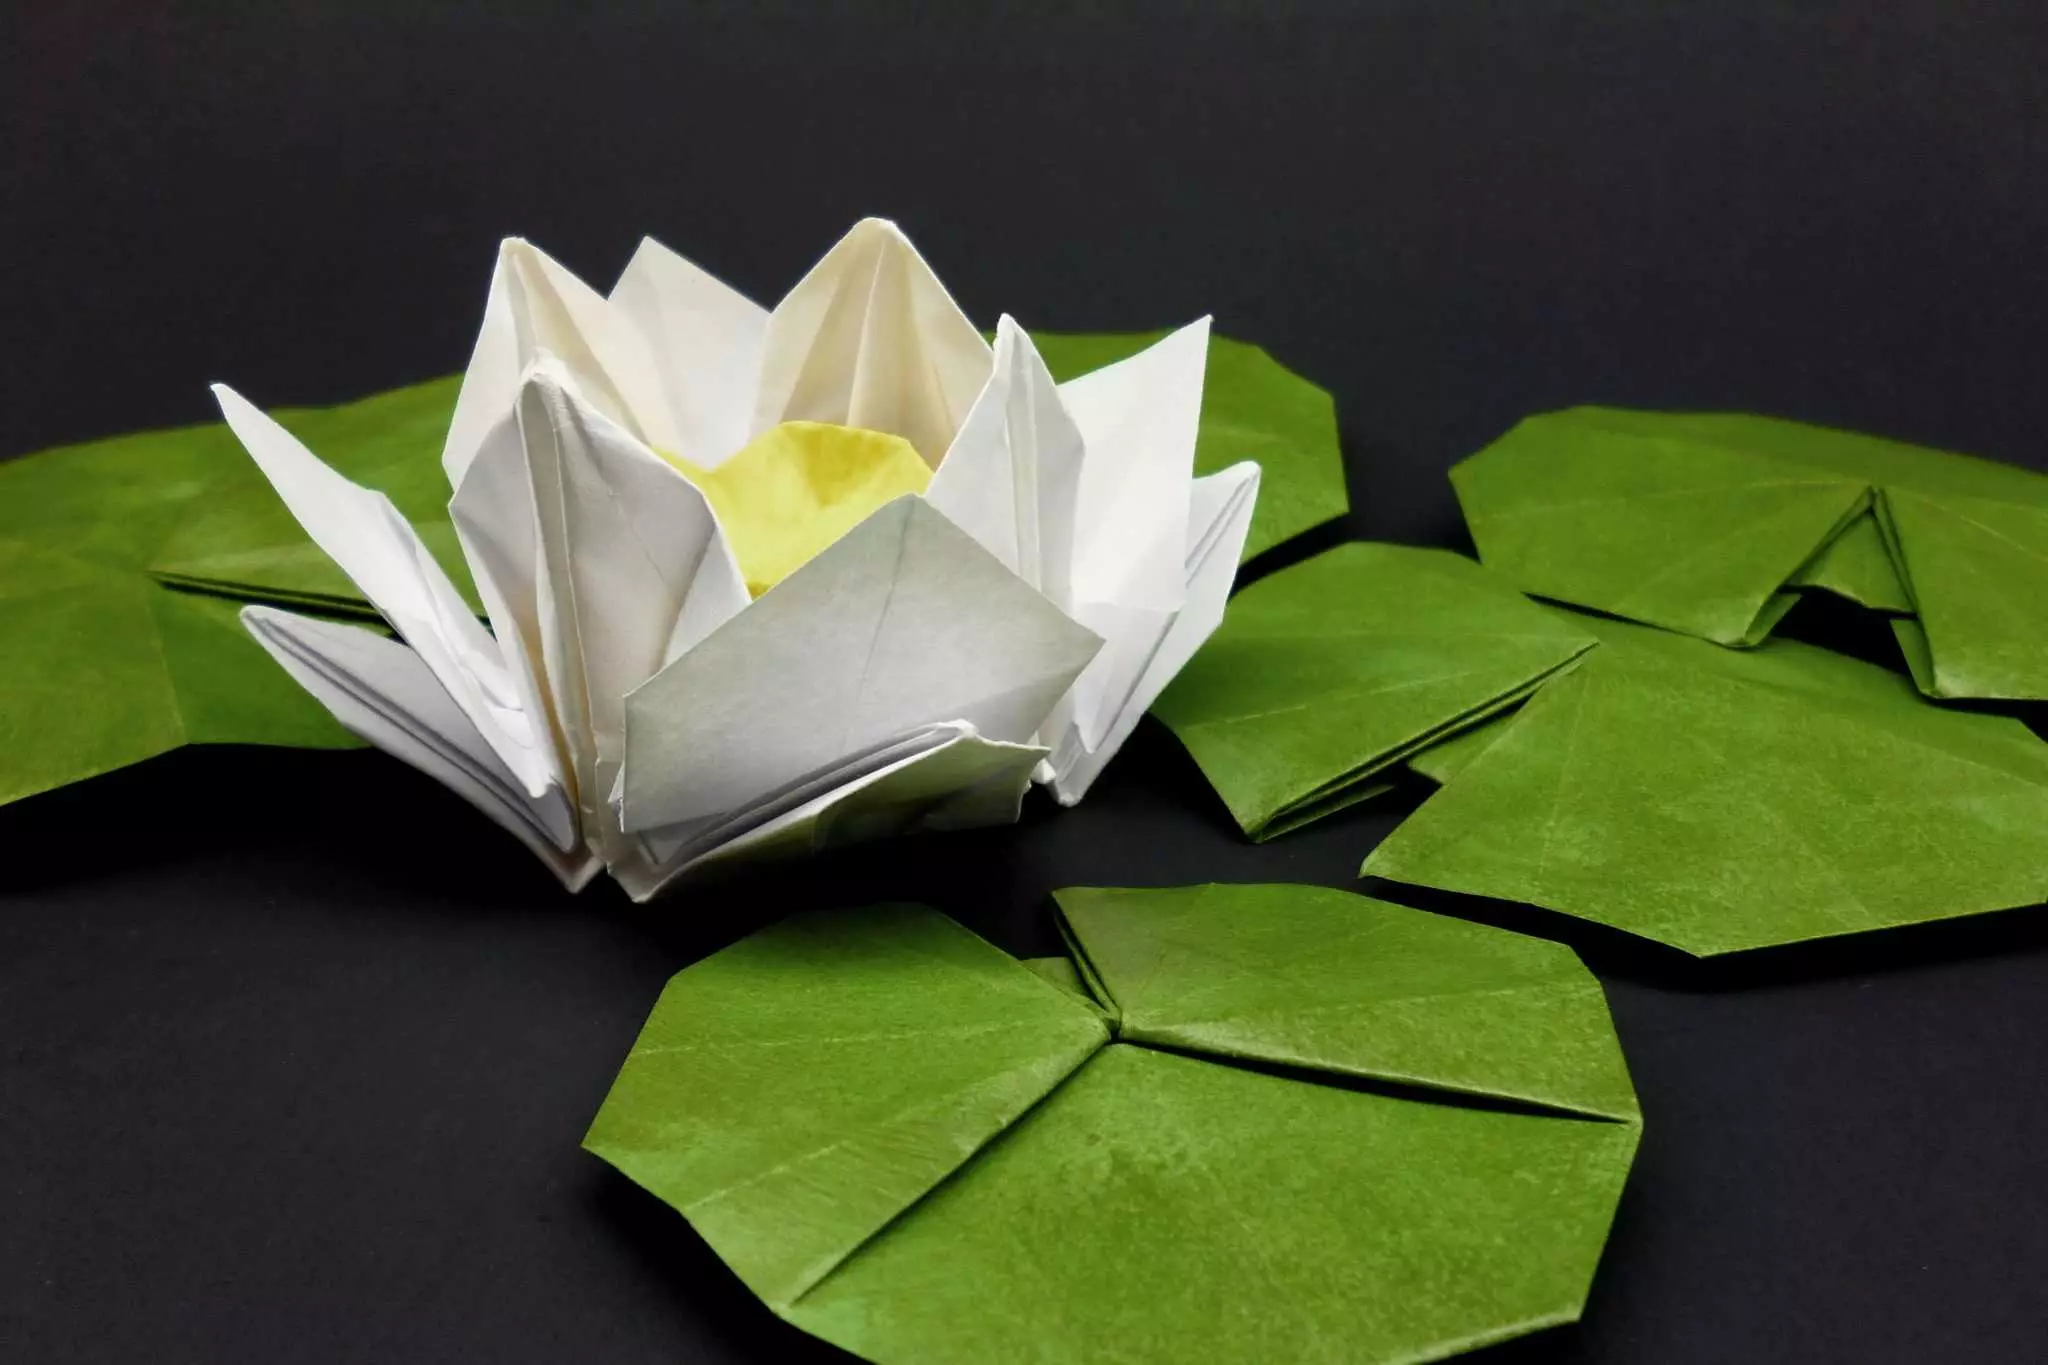 Origami tarixi: modulli origami paydo bo'lishi. Kim ixtiro qildi va qaysi yilda? Zamonaviy dunyodagi bolalar uchun Origami qog'ozi 27025_15